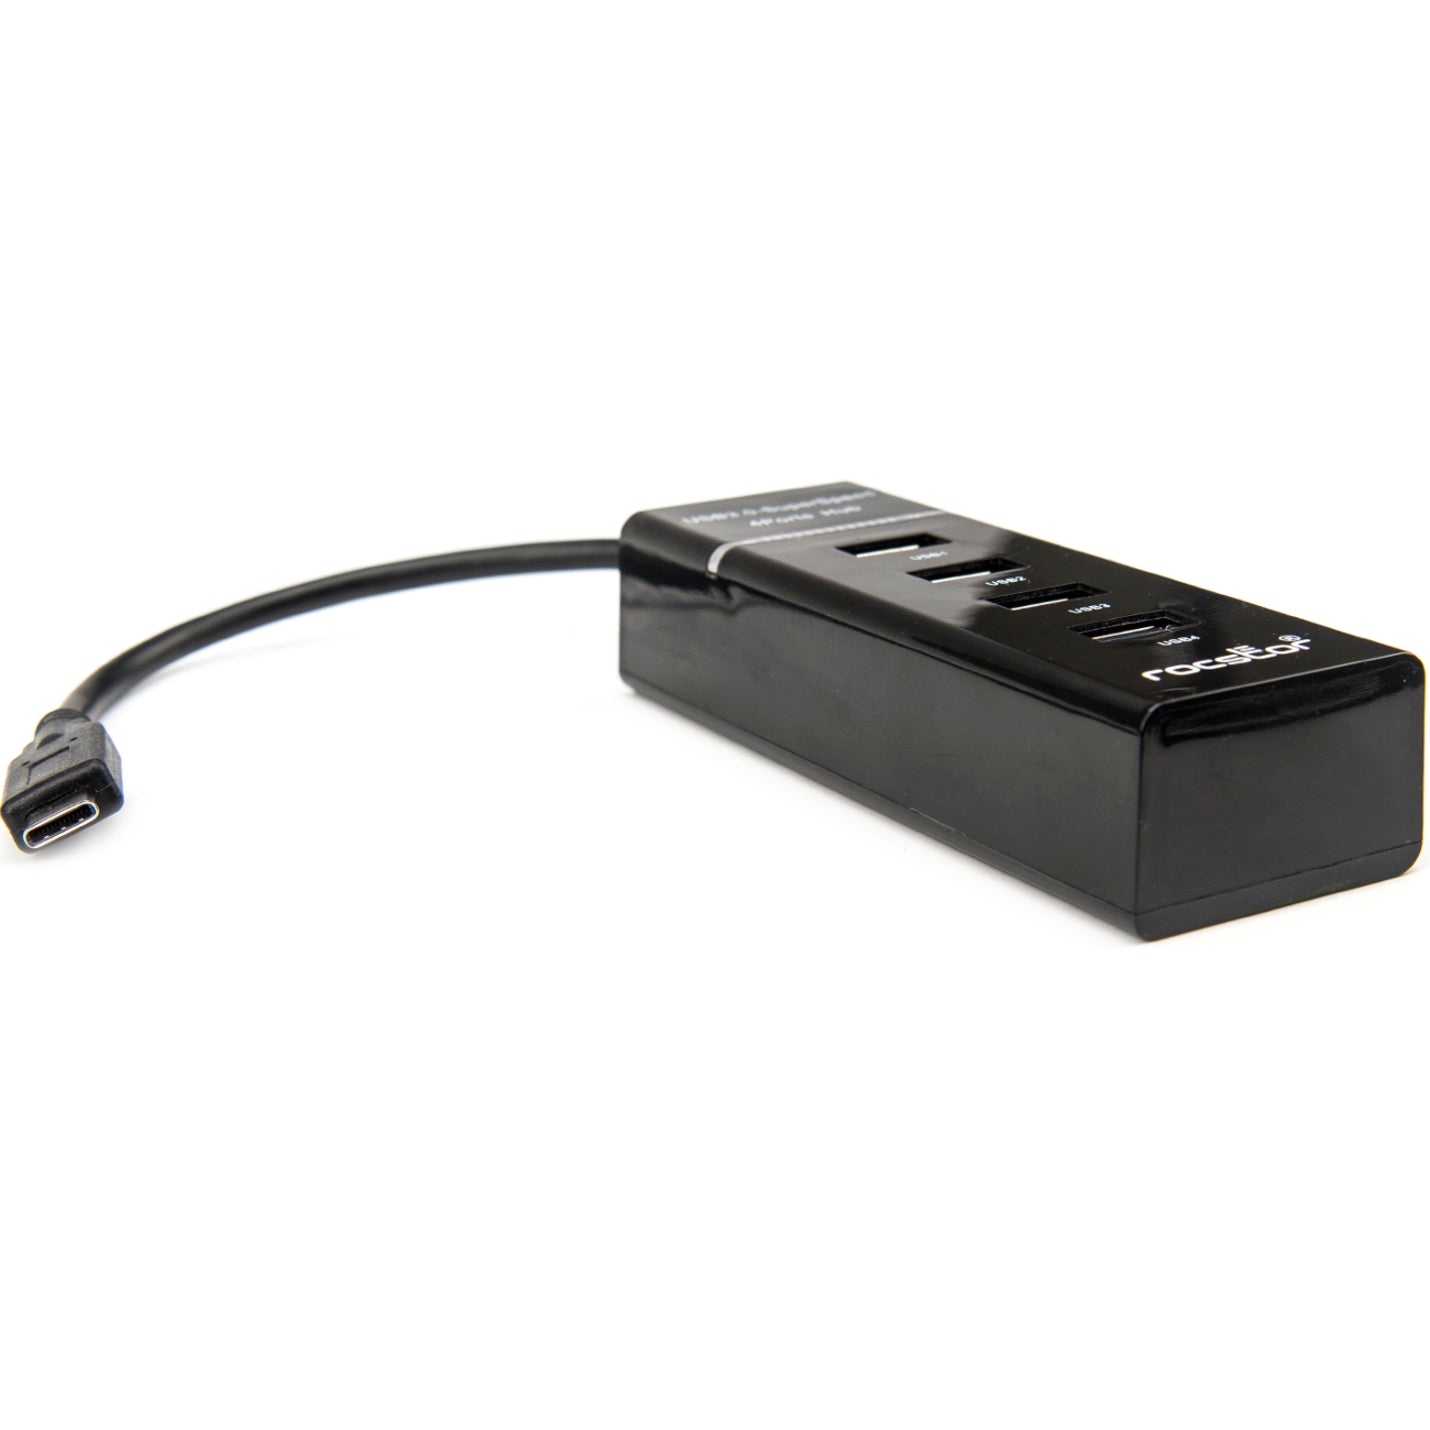 Rocstor Y10A228-B1 프리미엄 슬림 휴대용 4포트 USB C 허브 4 USB 3.0 포트 버스 전원 공급